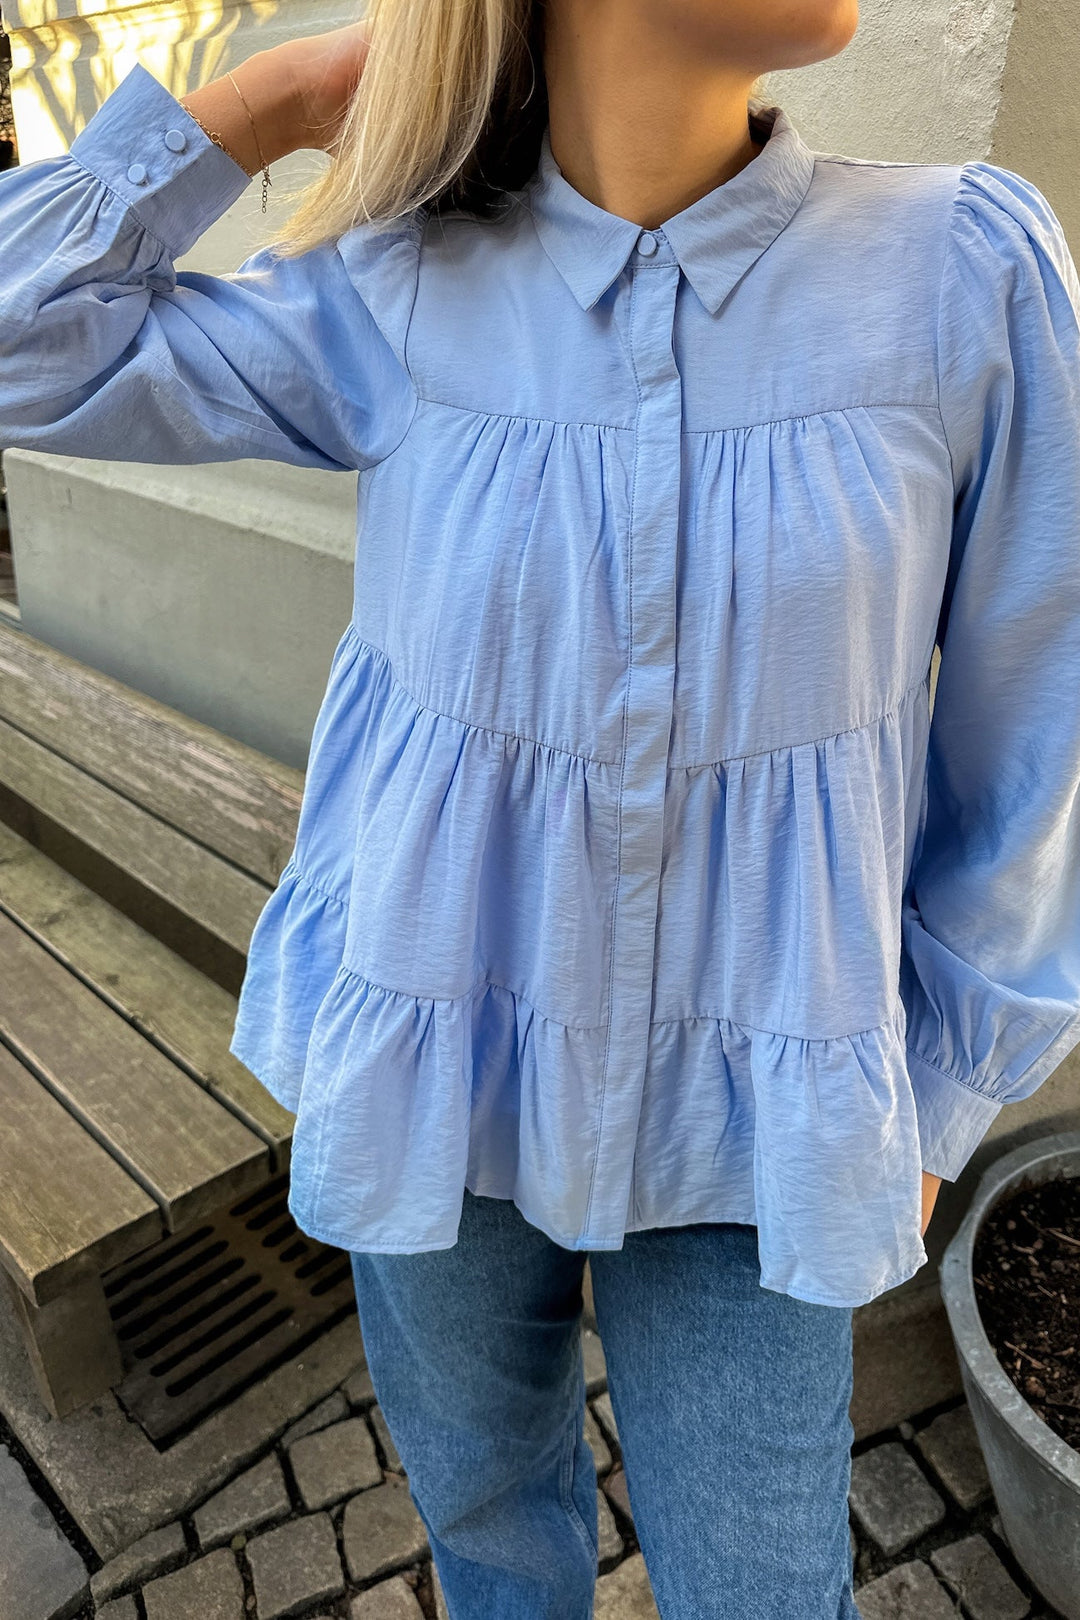 Yaspala Ls Shirt Kentucky Blue | Skjorter og bluser | Smuk - Dameklær på nett